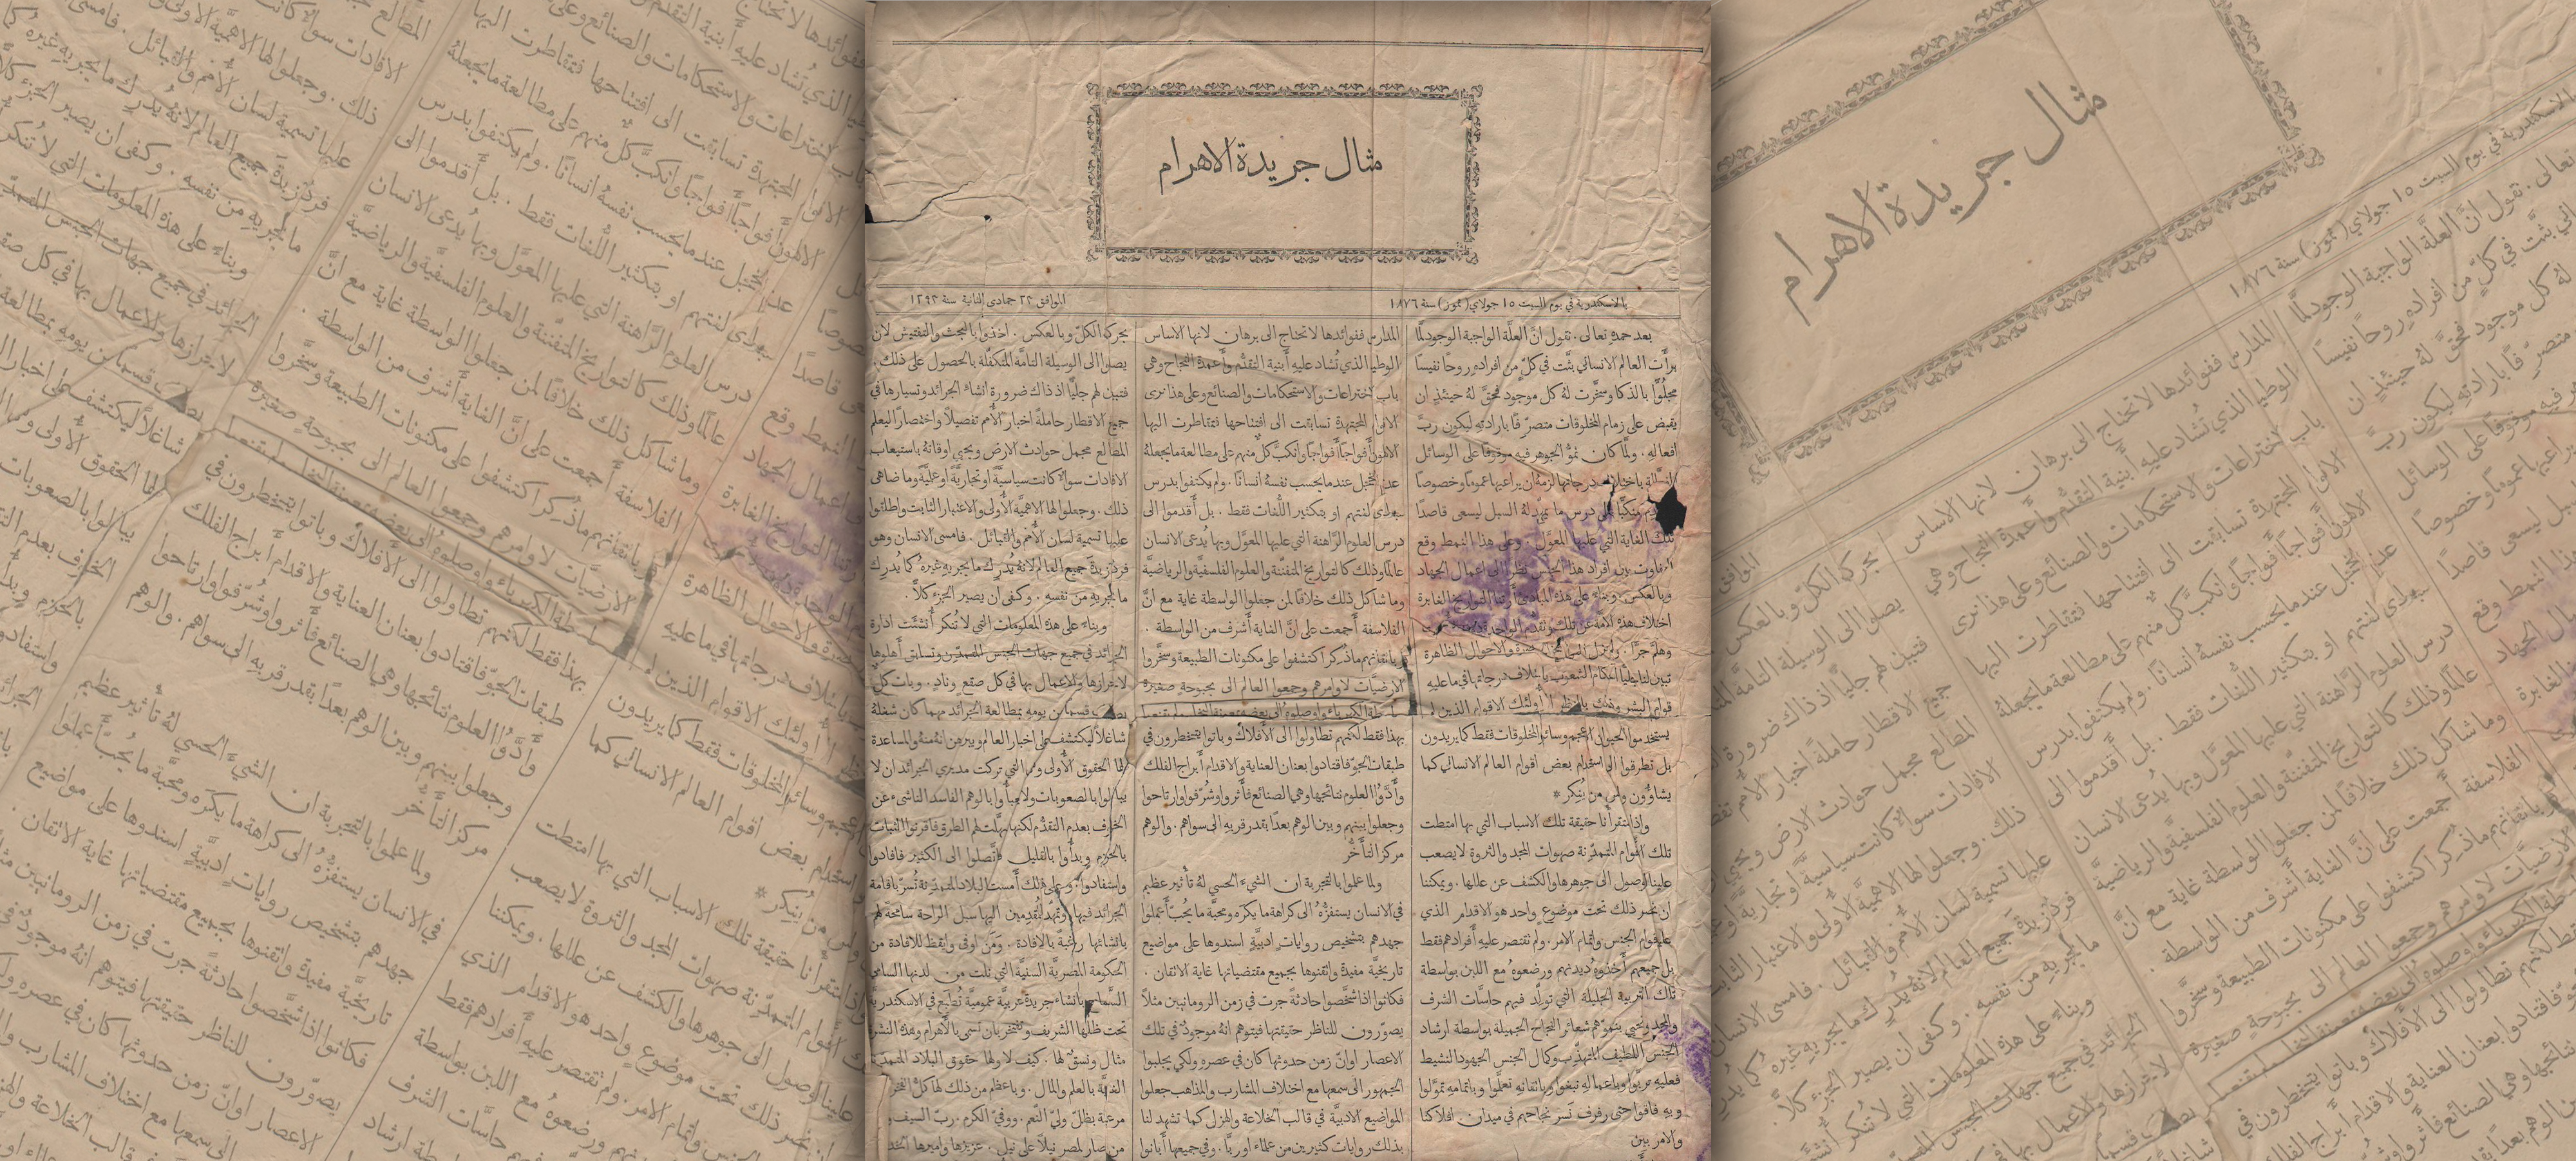 Al-Ahram Newspaper - June 15, 1876